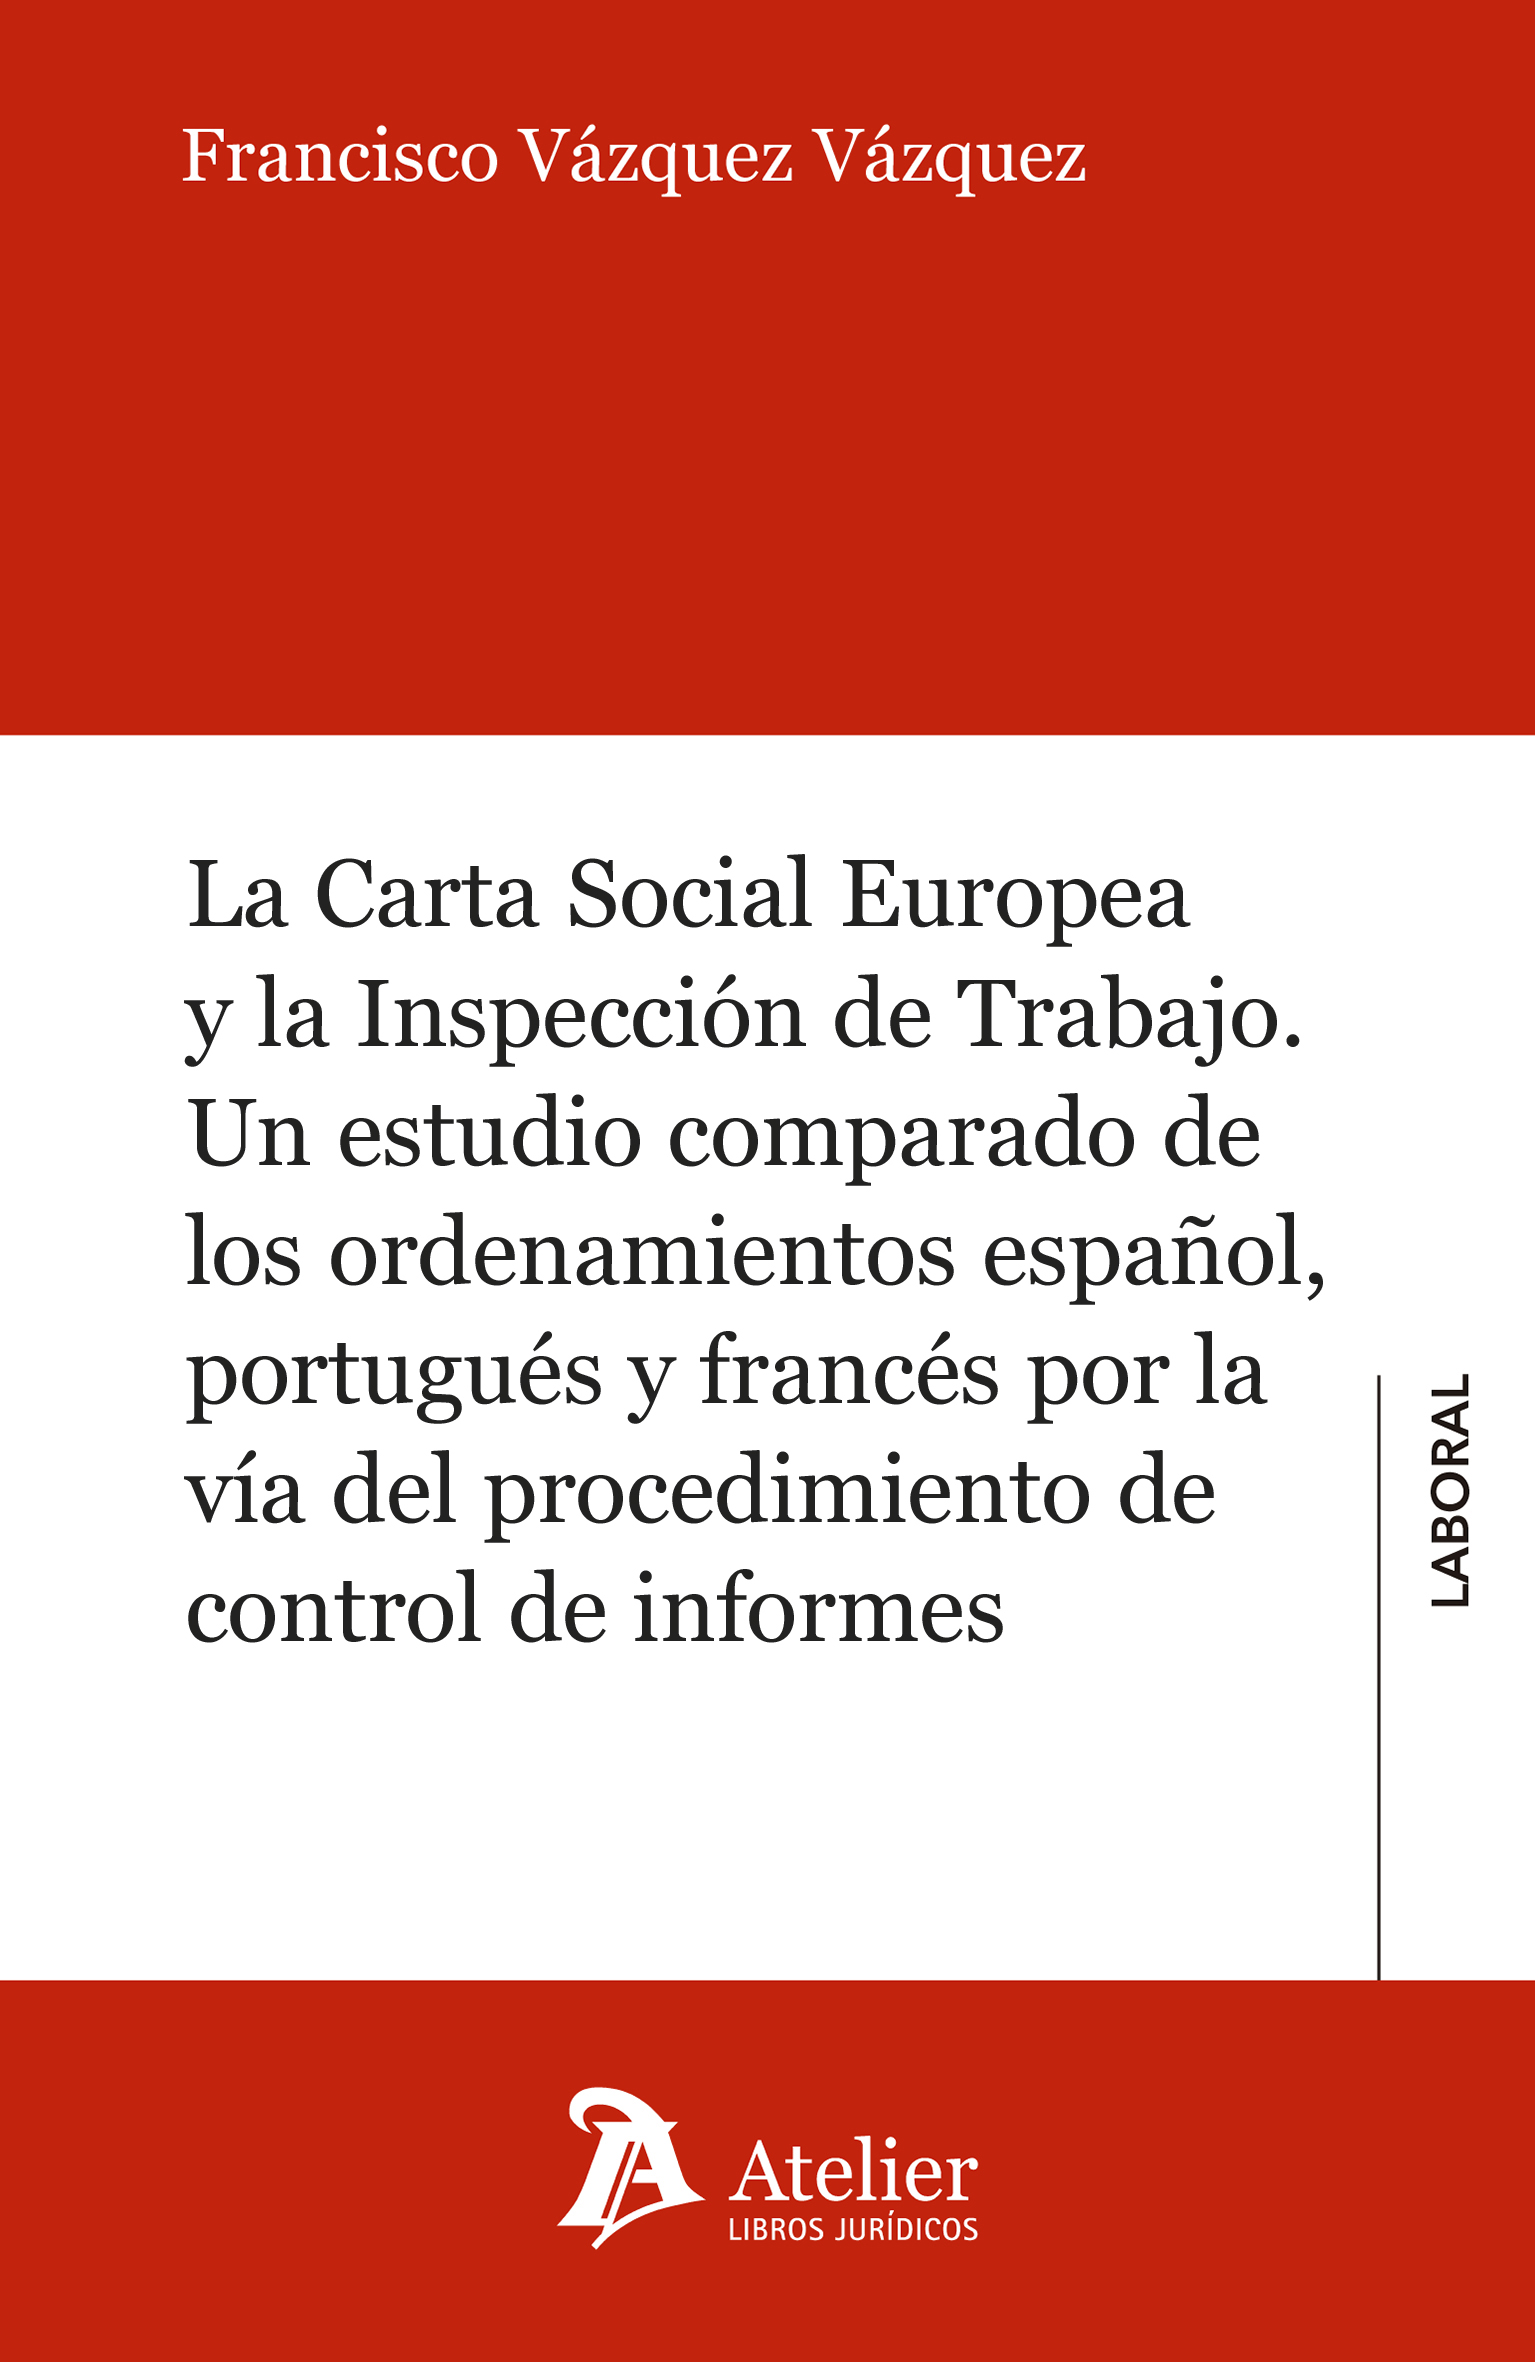 La Carta Social Europea y la inspección de trabajo. 9788417466015